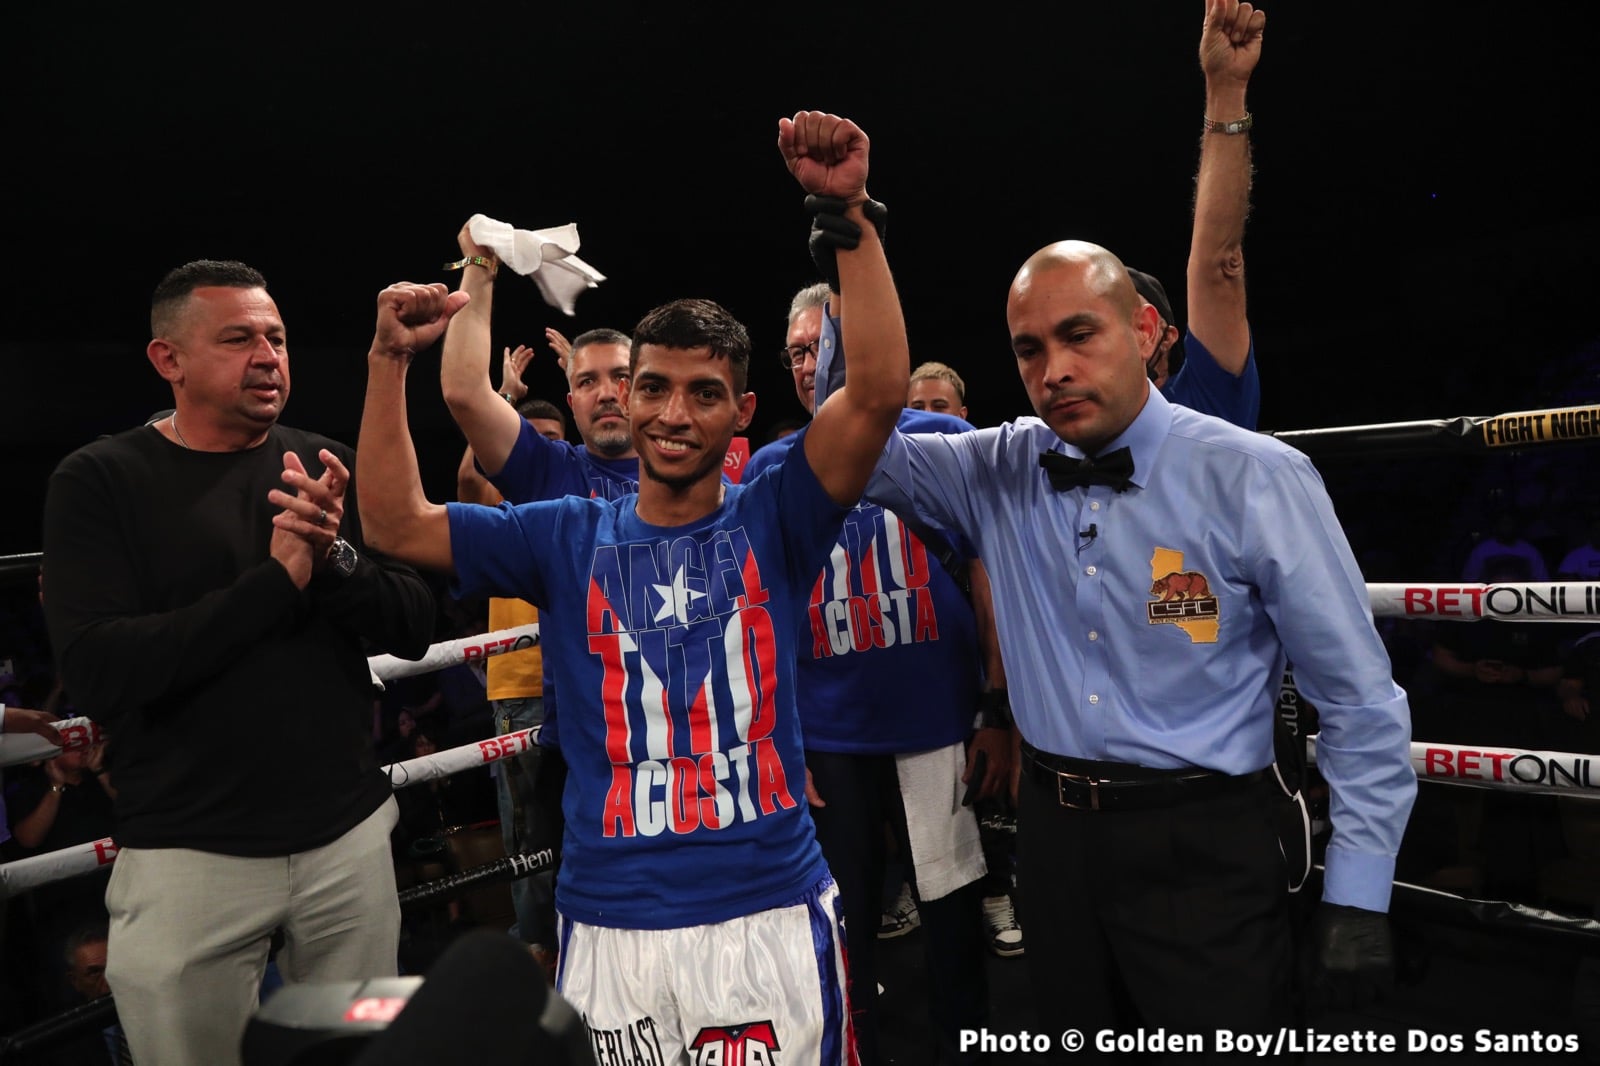 Image: Boxing Results: Angel “Tito” Acosta Stops Janiel “Pototo” Rivera in 1!